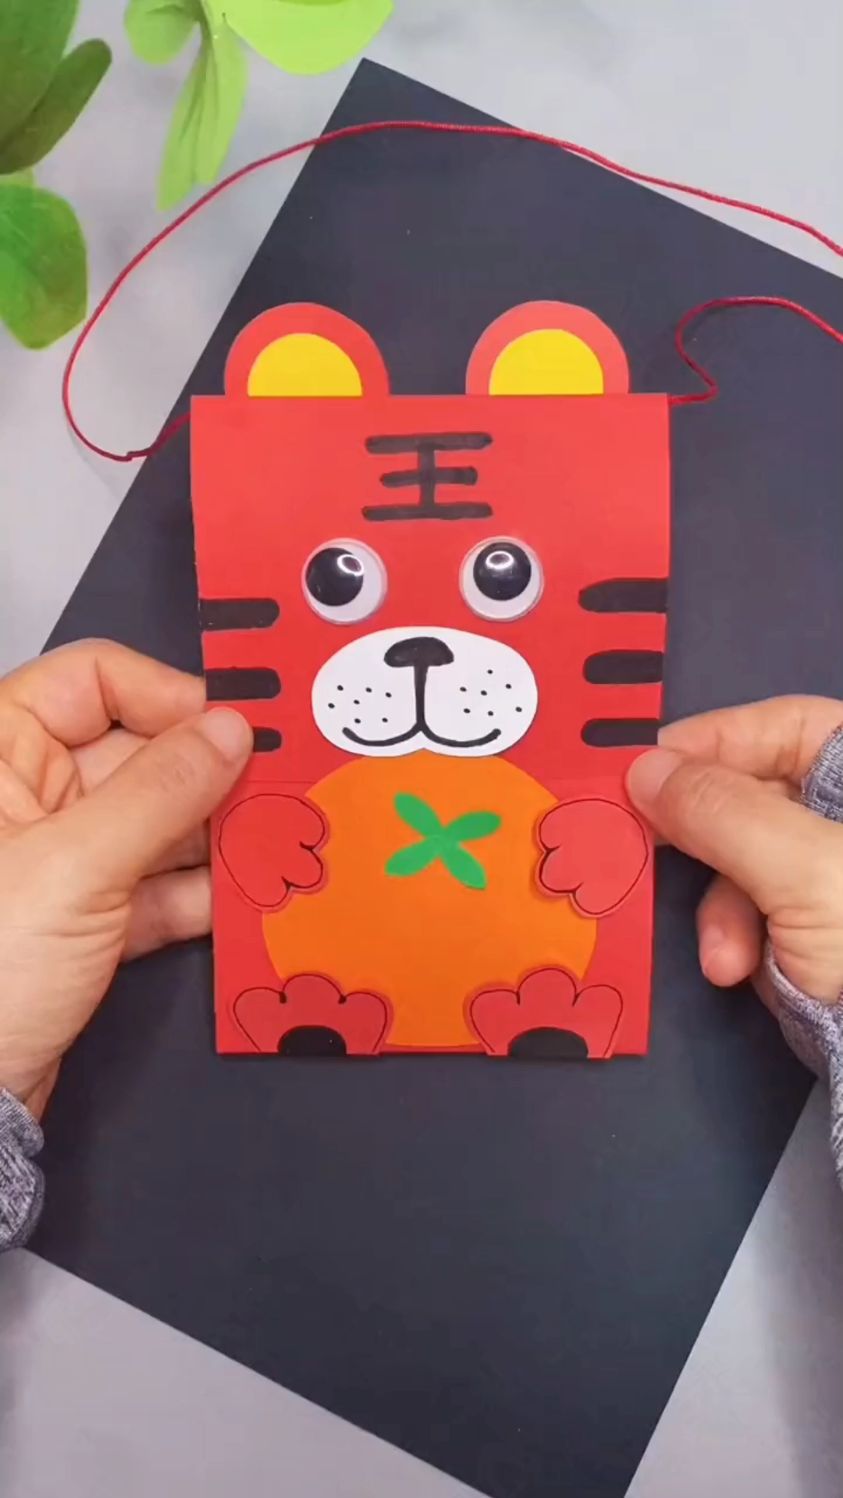 快过春节了用卡纸做个可爱的小老虎立体贺卡吧